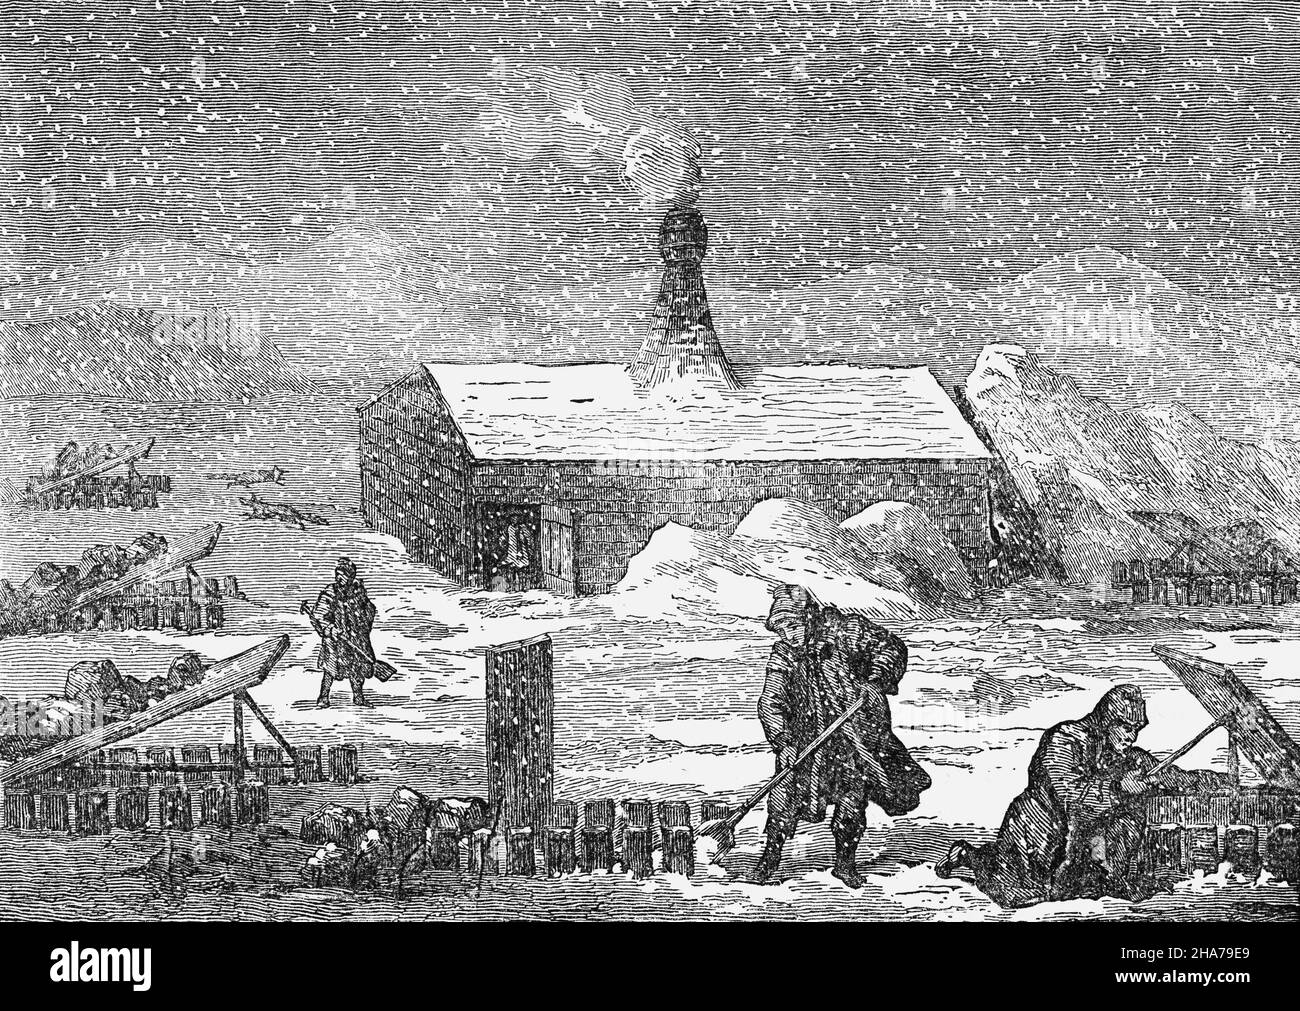 Une illustration de la fin du 19th siècle d'une scène hivernale quintessence en Sibérie, une vaste région géographique, des montagnes de l'Oural à l'ouest à l'océan Pacifique à l'est et une partie de la Russie depuis la dernière moitié du 16th siècle,Après que les Russes ont conquis des terres à l'est des montagnes de l'Oural. Banque D'Images